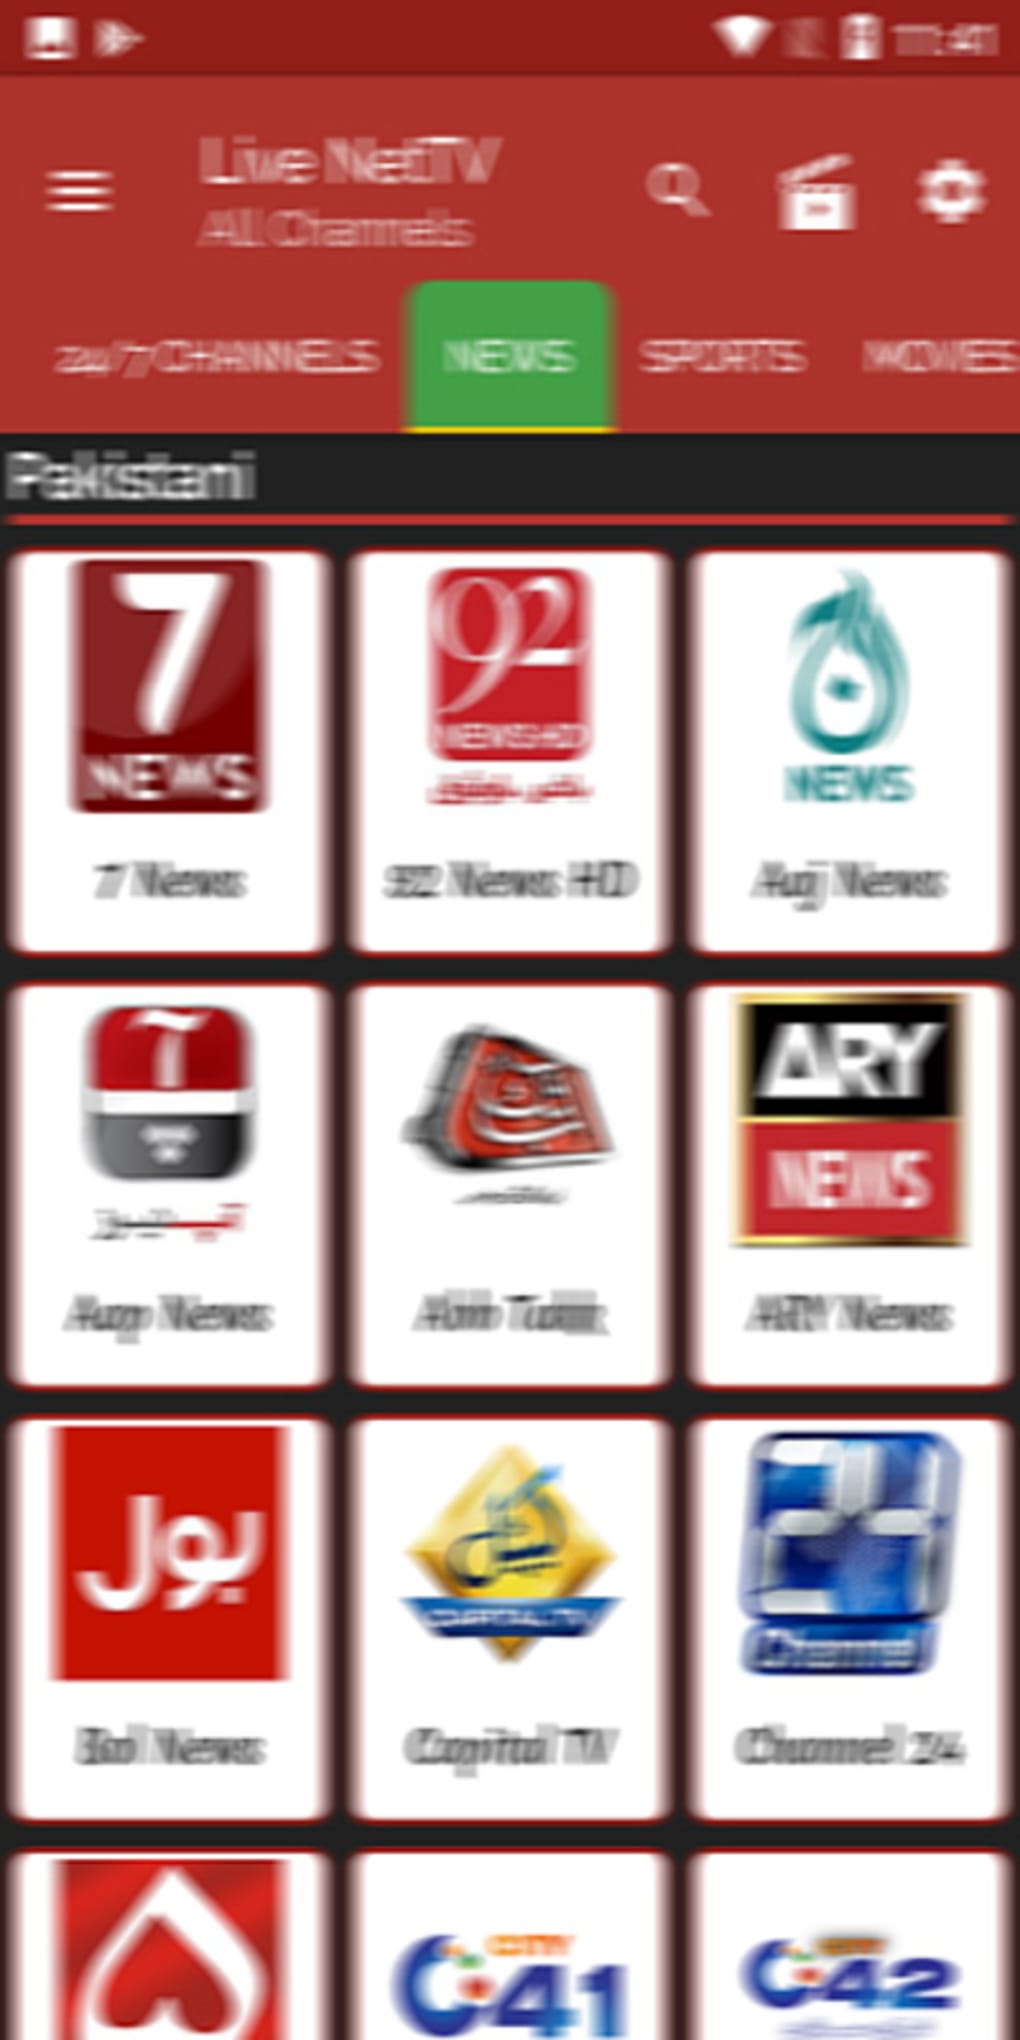 LiveNet HDTV App 4.8 Guide for Android